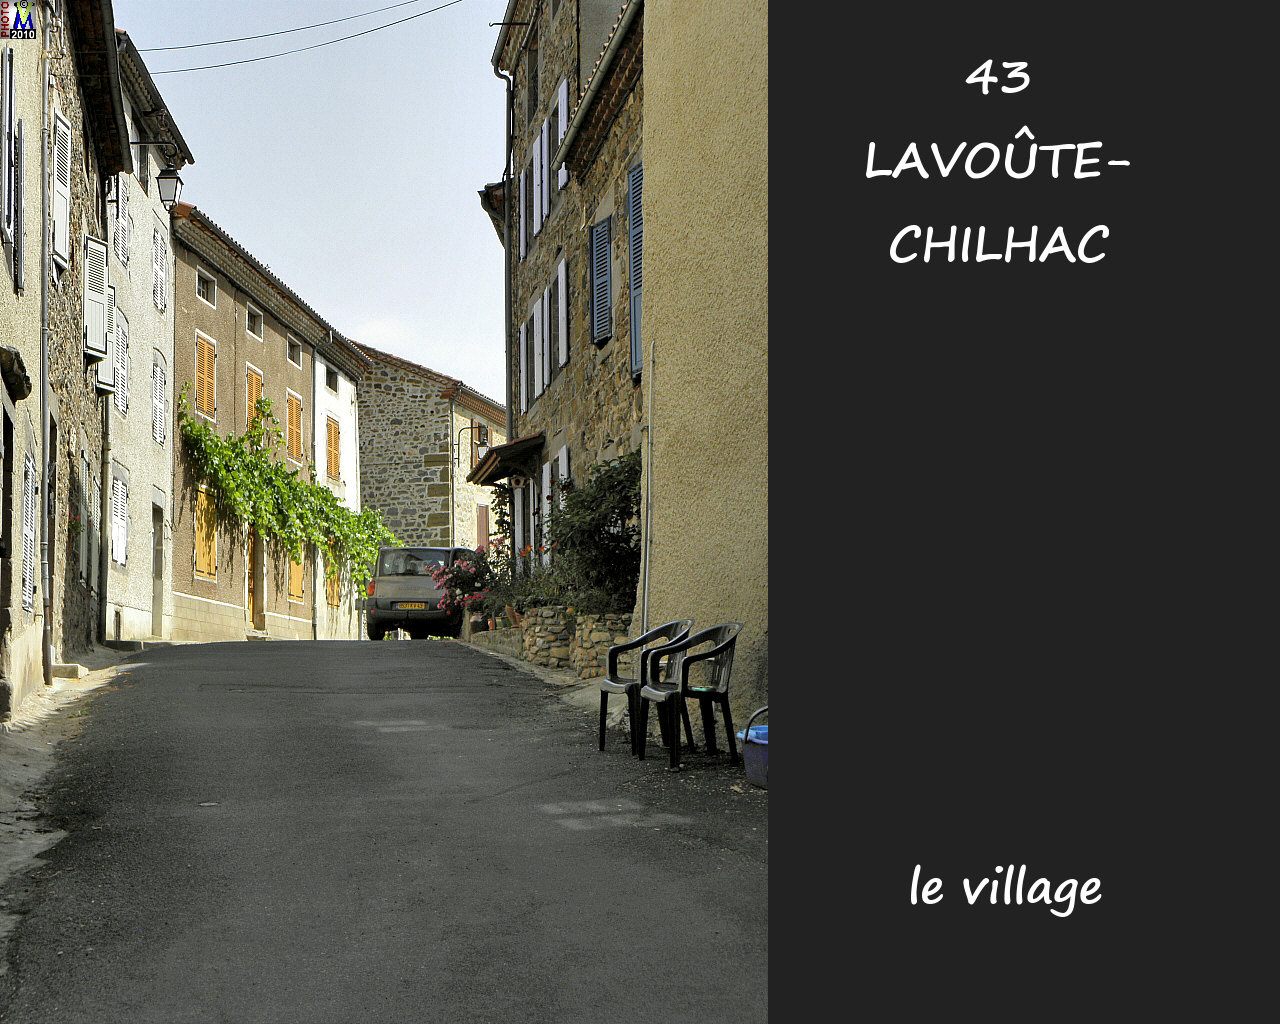 43LAVOUTE-CHILHAC_village_150.jpg